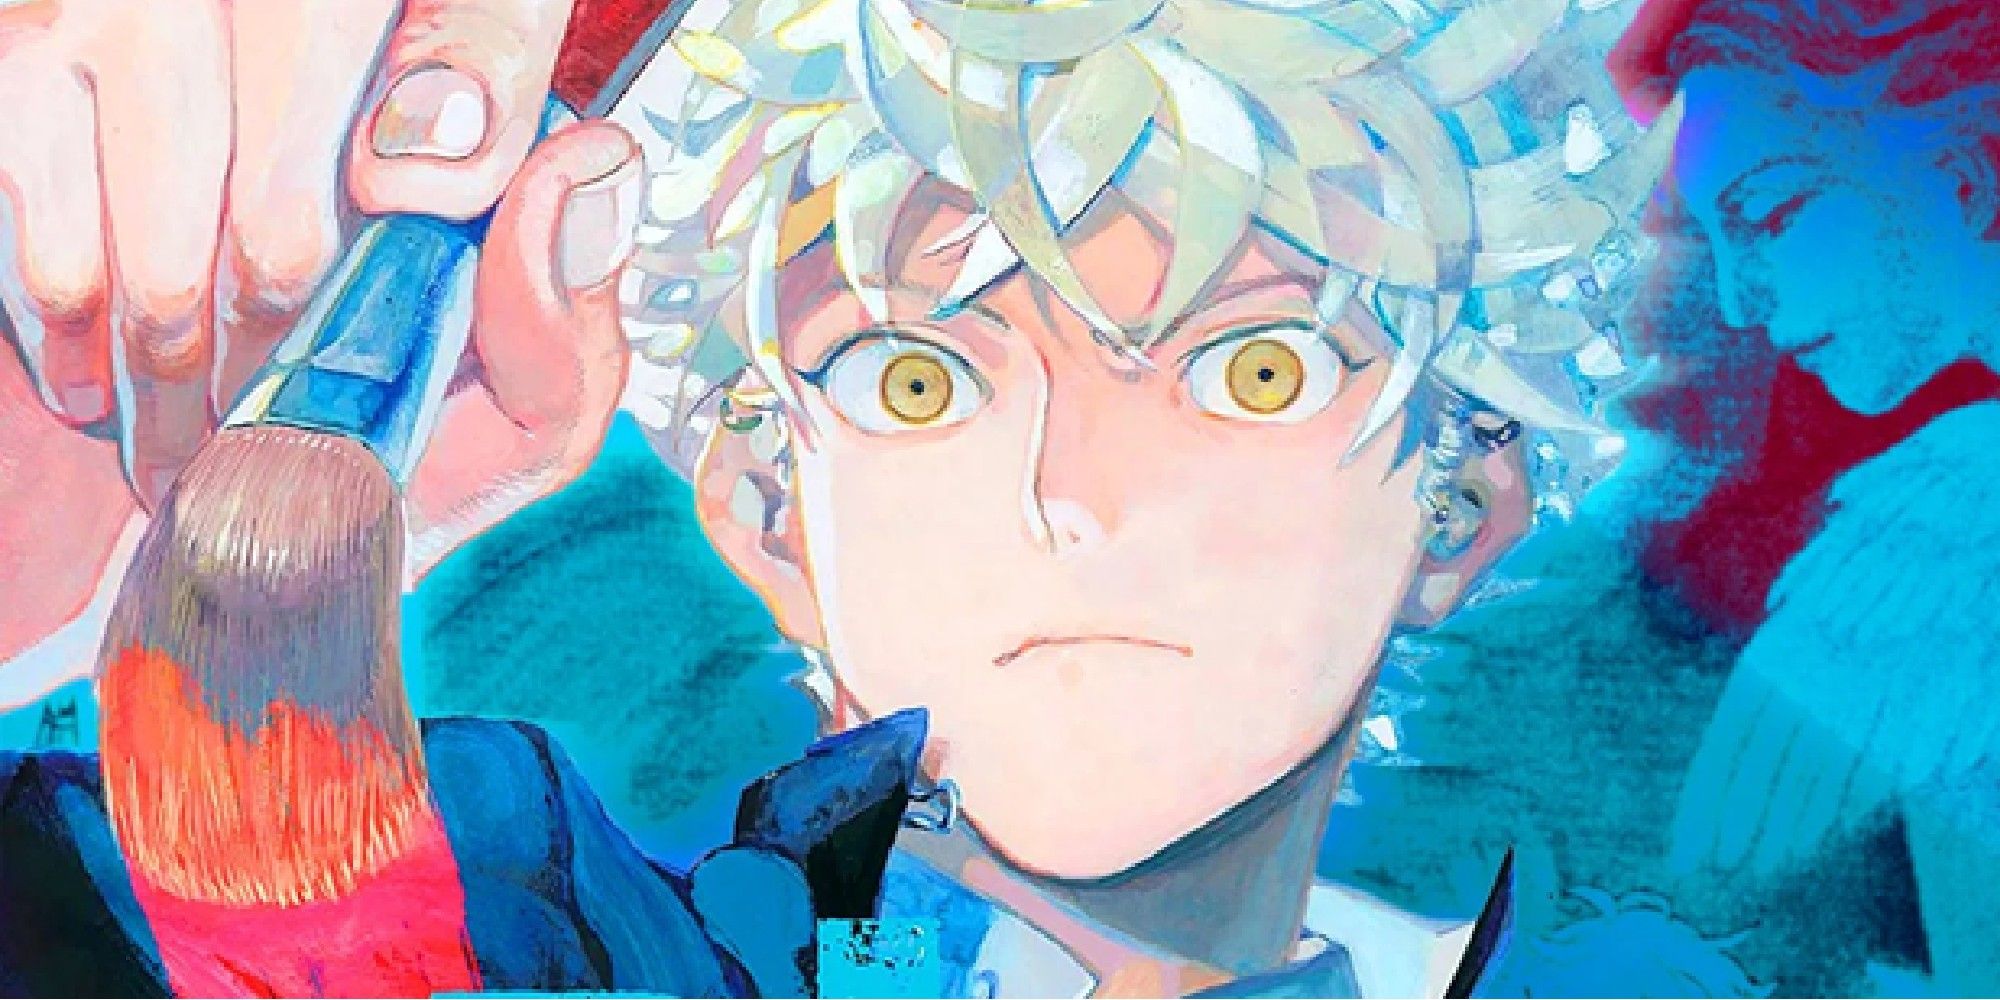 capa colorida do mangá Blue Period apresentando o personagem principal pintando com um pincel.